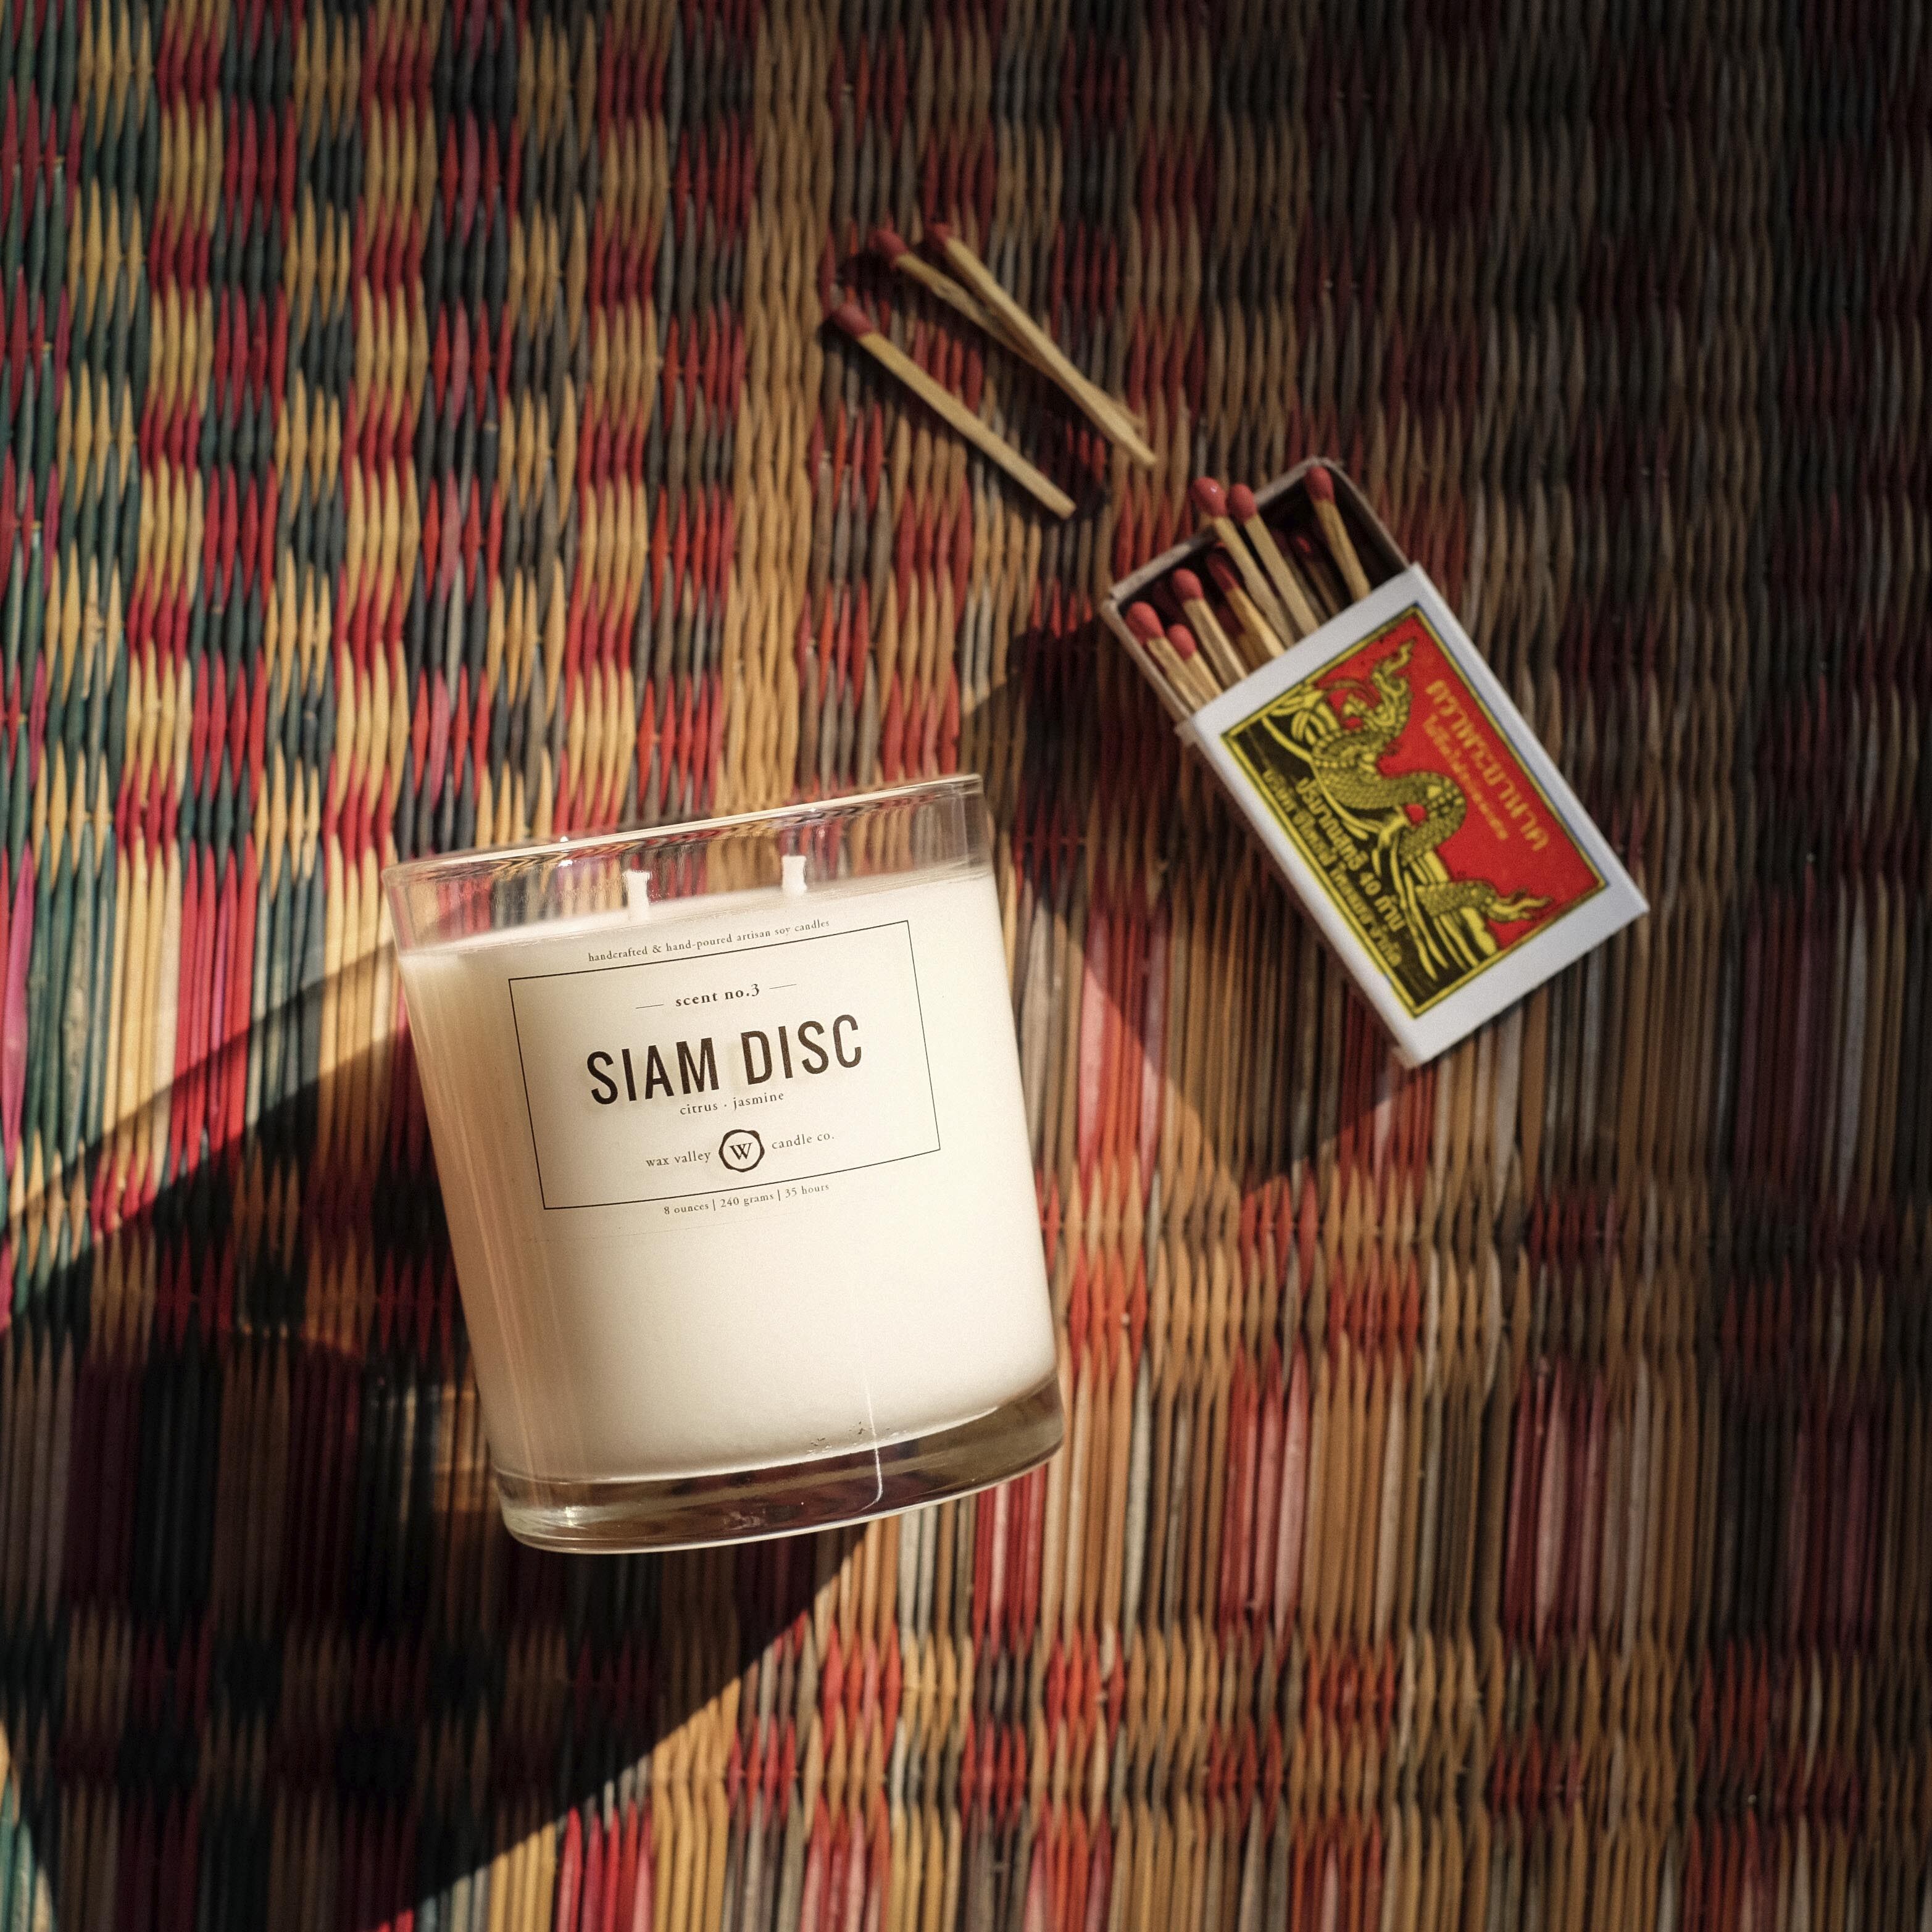 เทียนหอม เทียนไขถั่วเหลือง กลิ่น Siam Disc - Jasmine & Citrus สี ใส